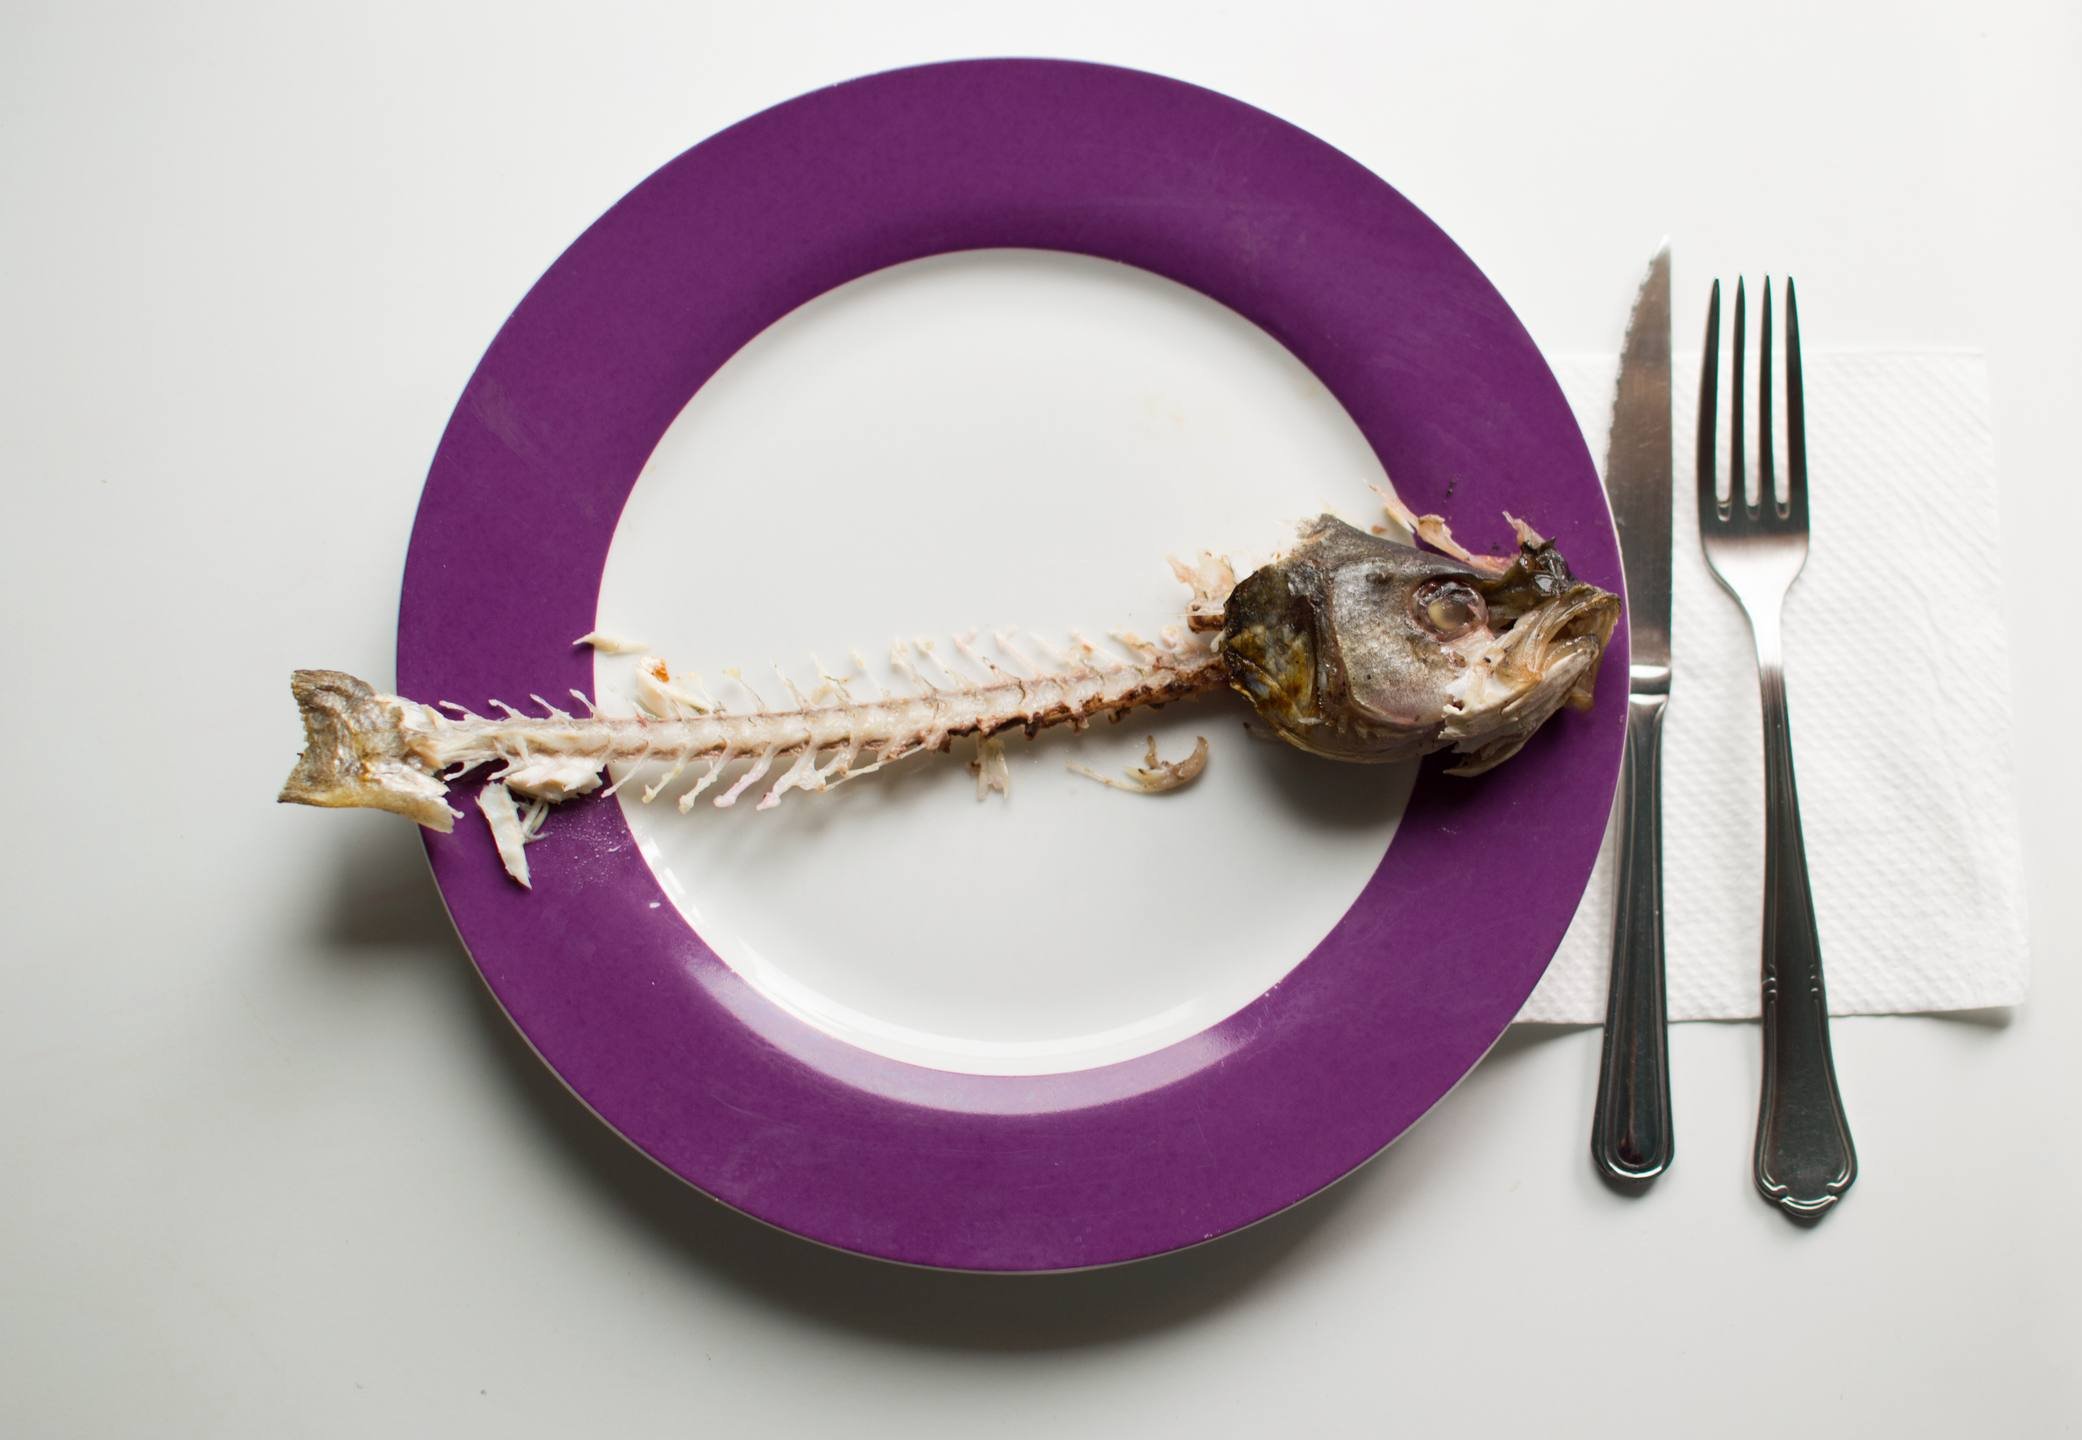 Foto mostra espinha de peixe disposta em prato com as bordas roxas - Metrópoles